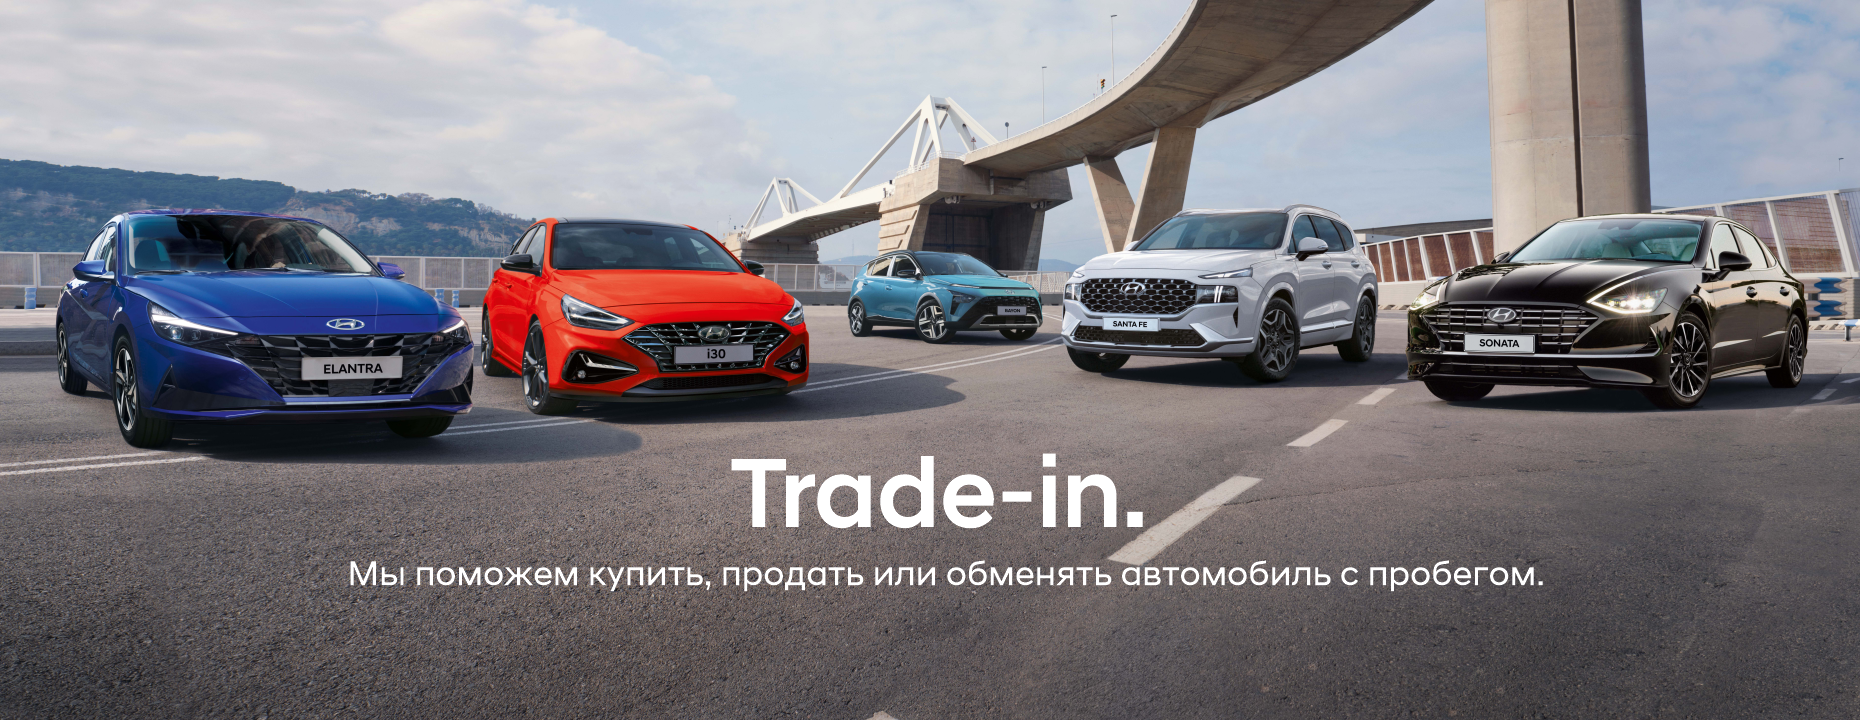 Trade in_ru